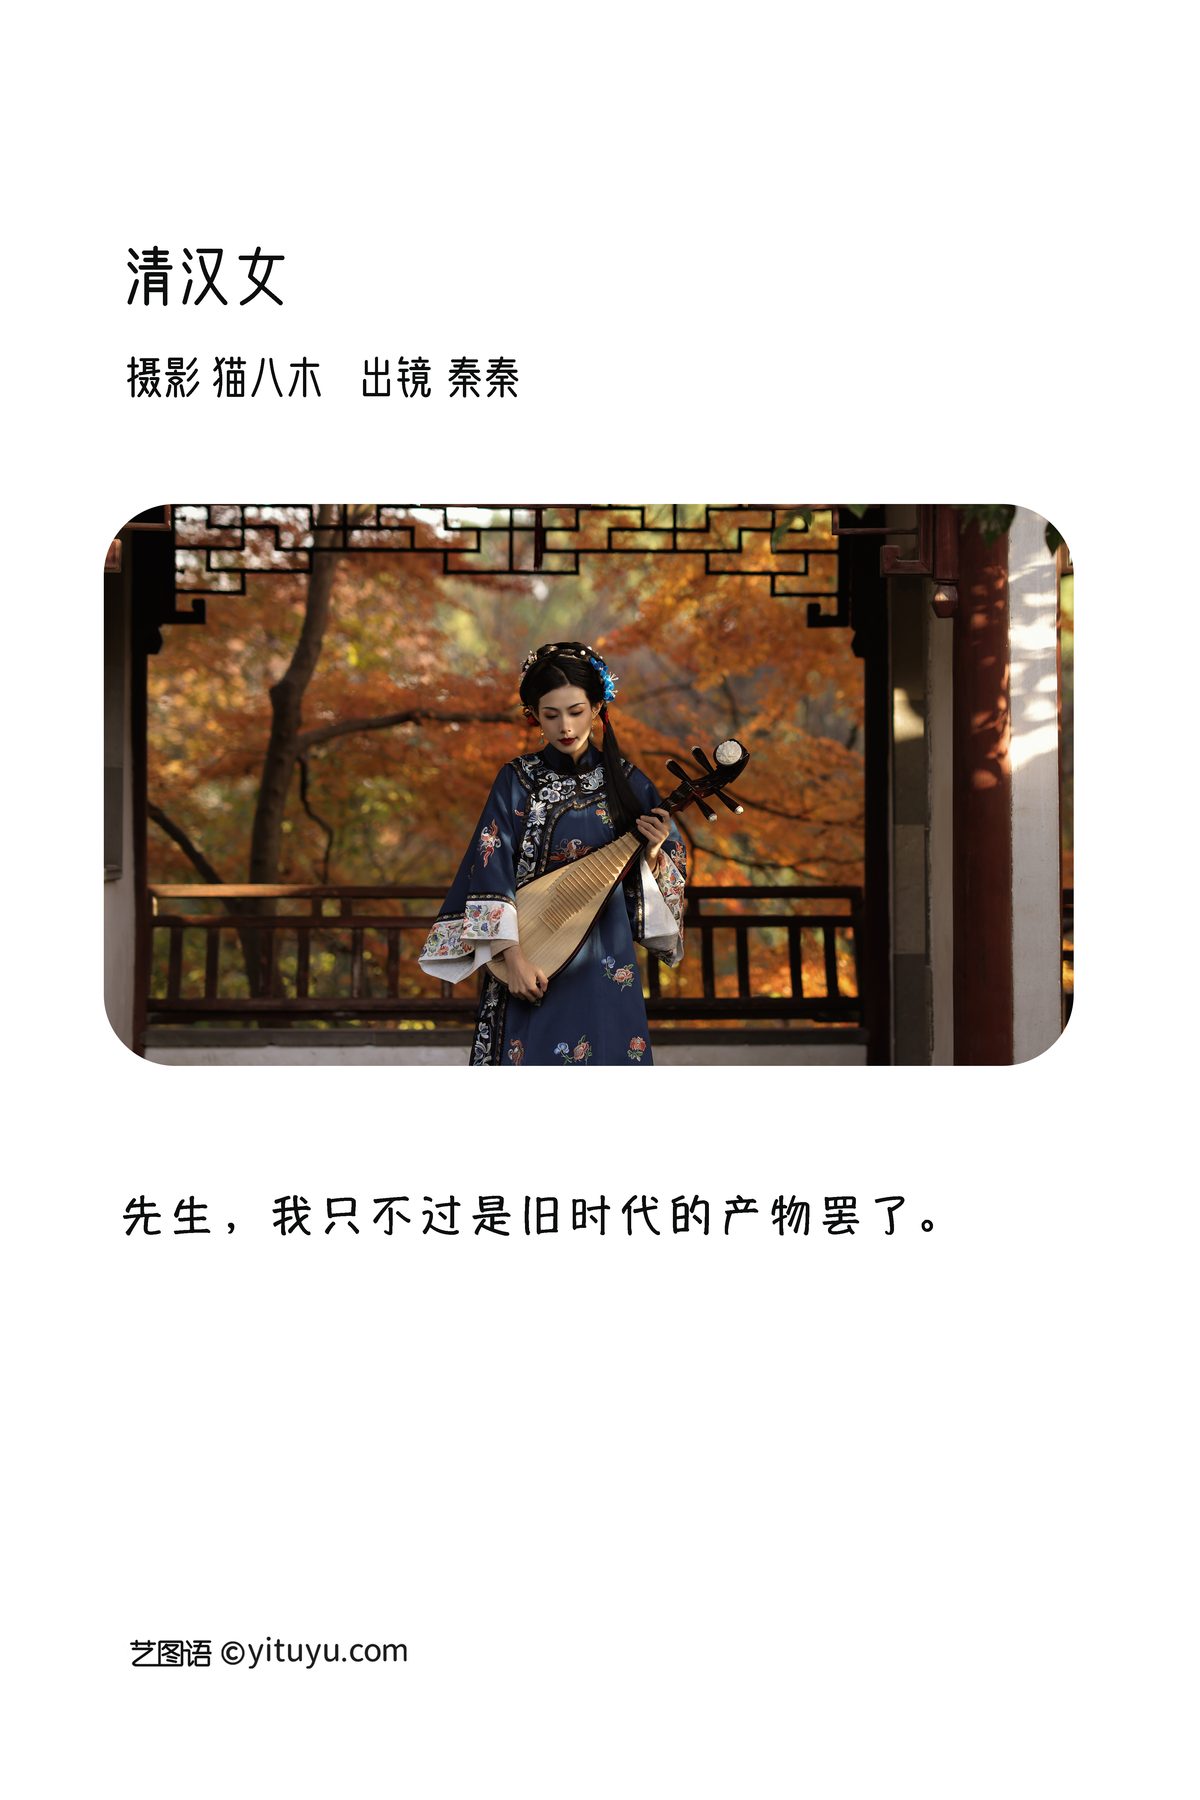 YiTuYu艺图语 Vol 3397 Qin Qin 0002 8715967468.jpg